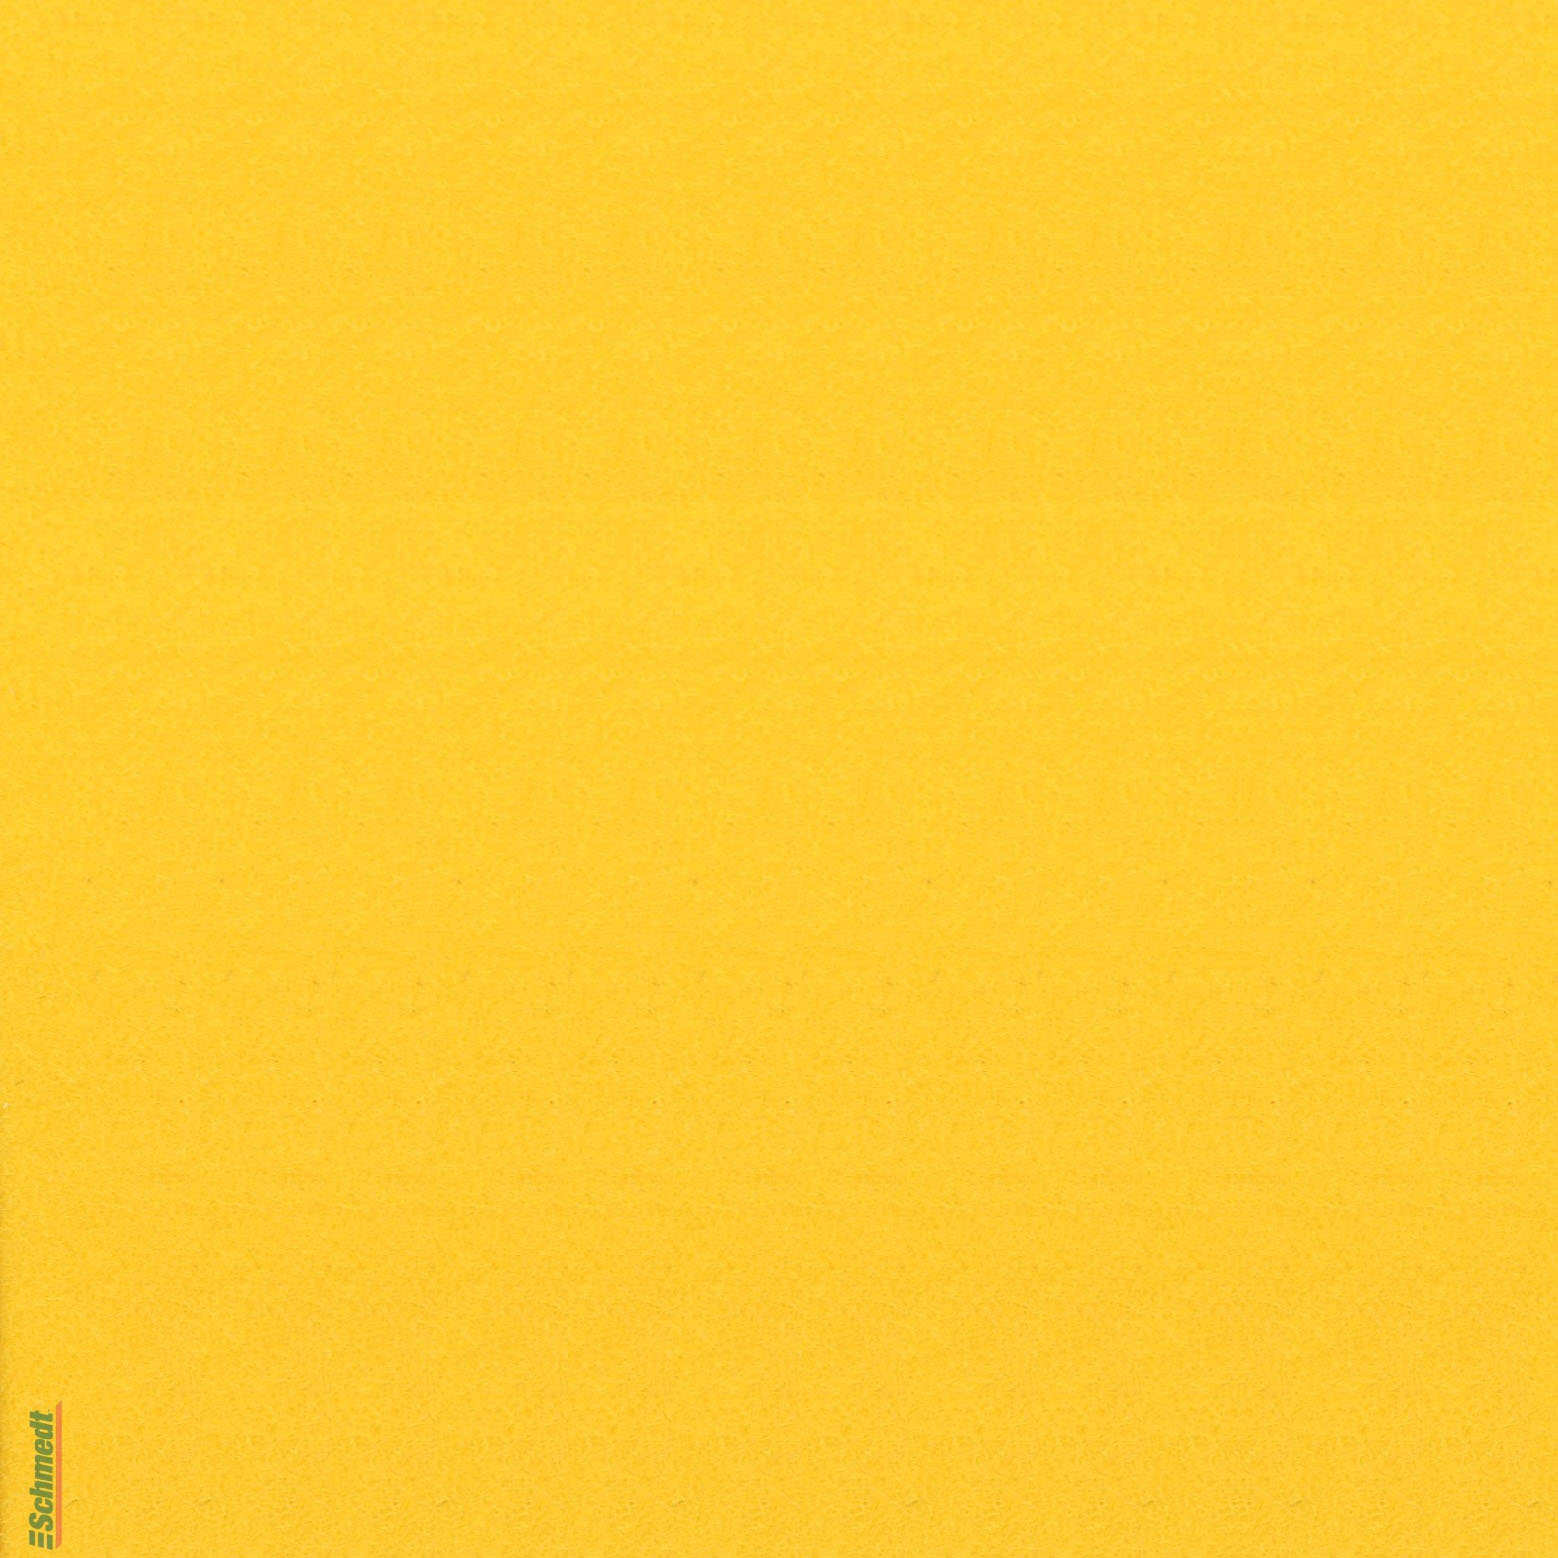 Velours-Papier - Farbe 651 - gelb - zum Beziehen von Büchern, Schachteln, als Innenfutter für Kästen und Schuber, zum Gestalten von Einladun...